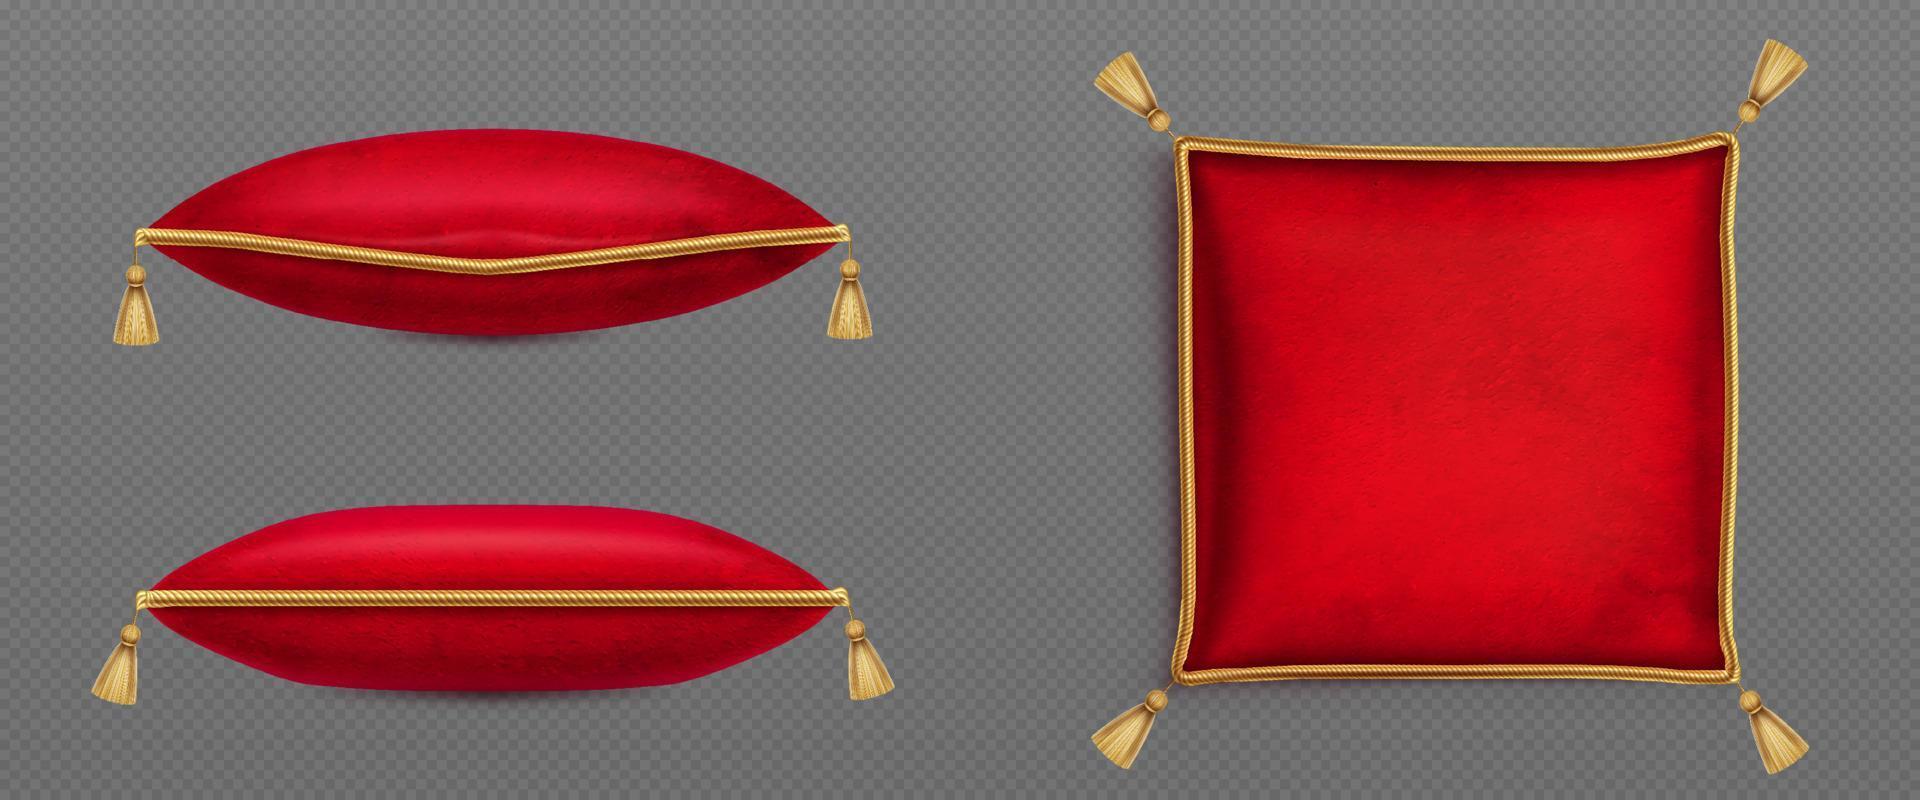 rojo terciopelo almohadas decorado oro cable borlas vector